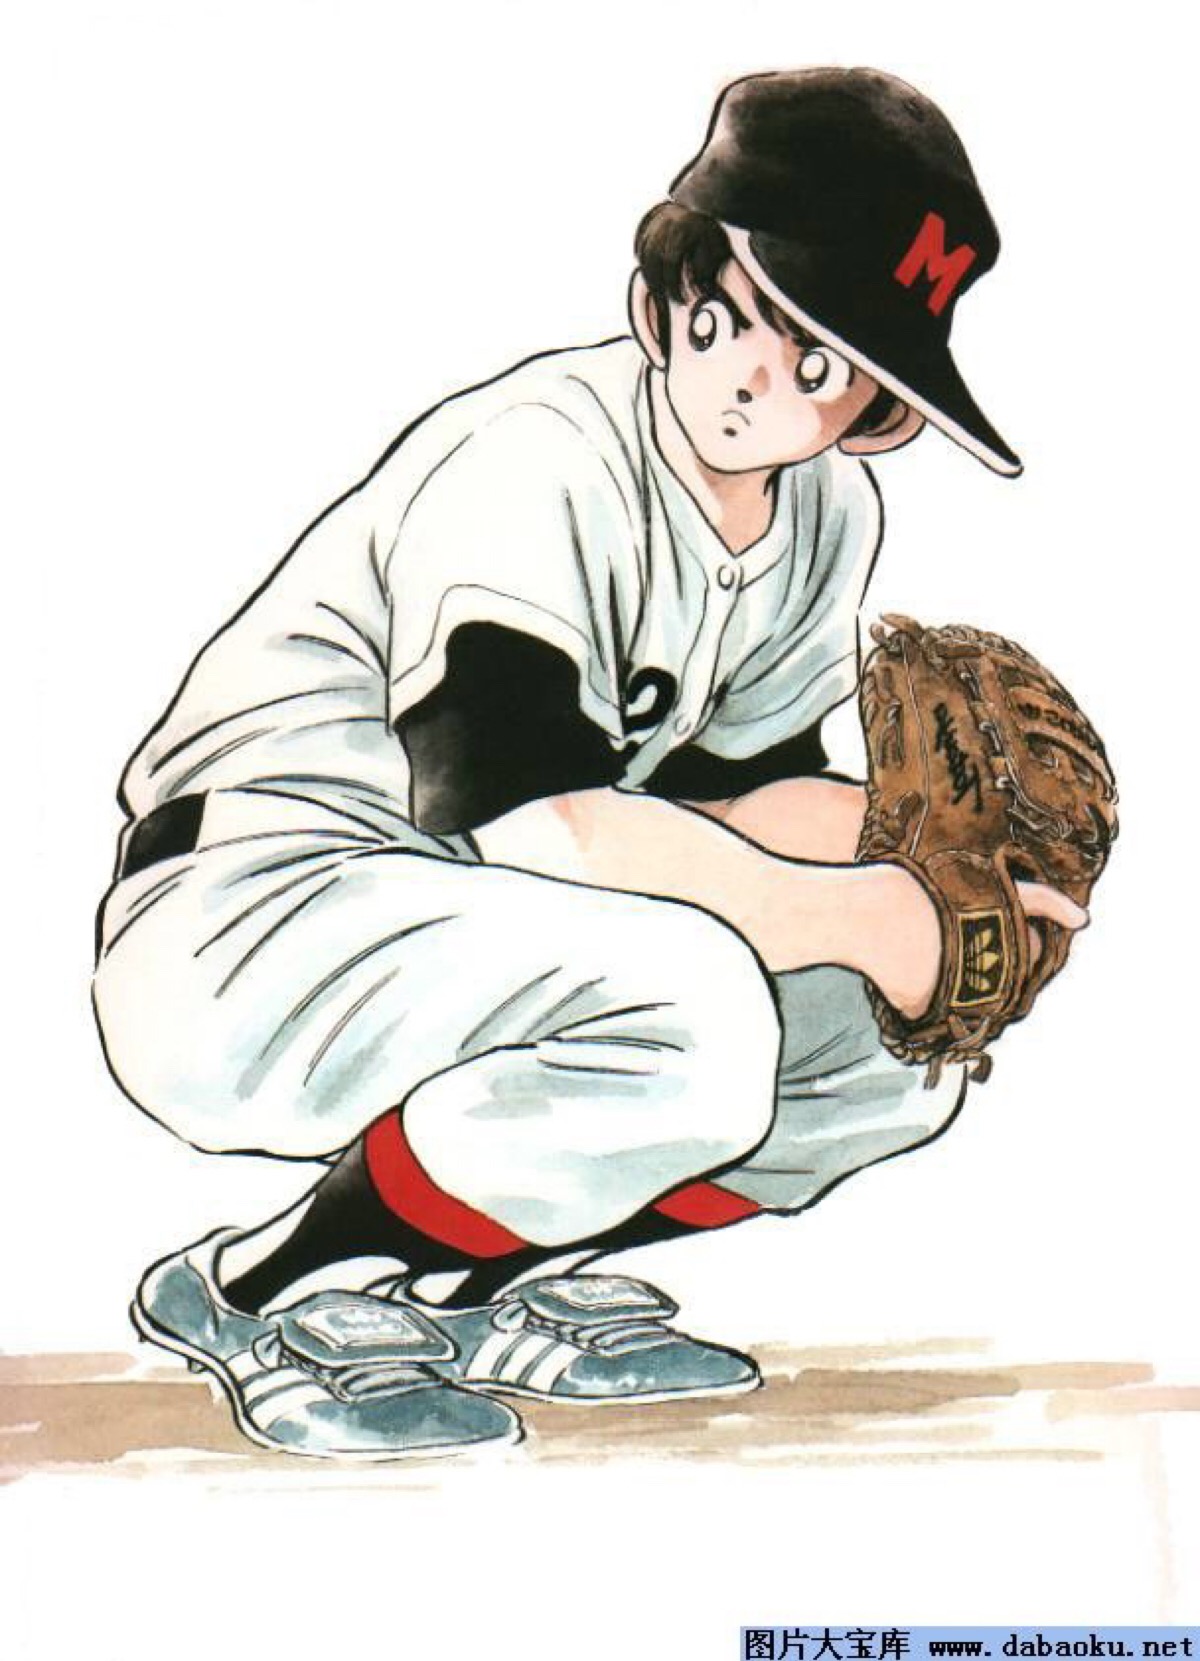 棒球卡通图片 – 可愛動漫人物圖片 – Didamagn